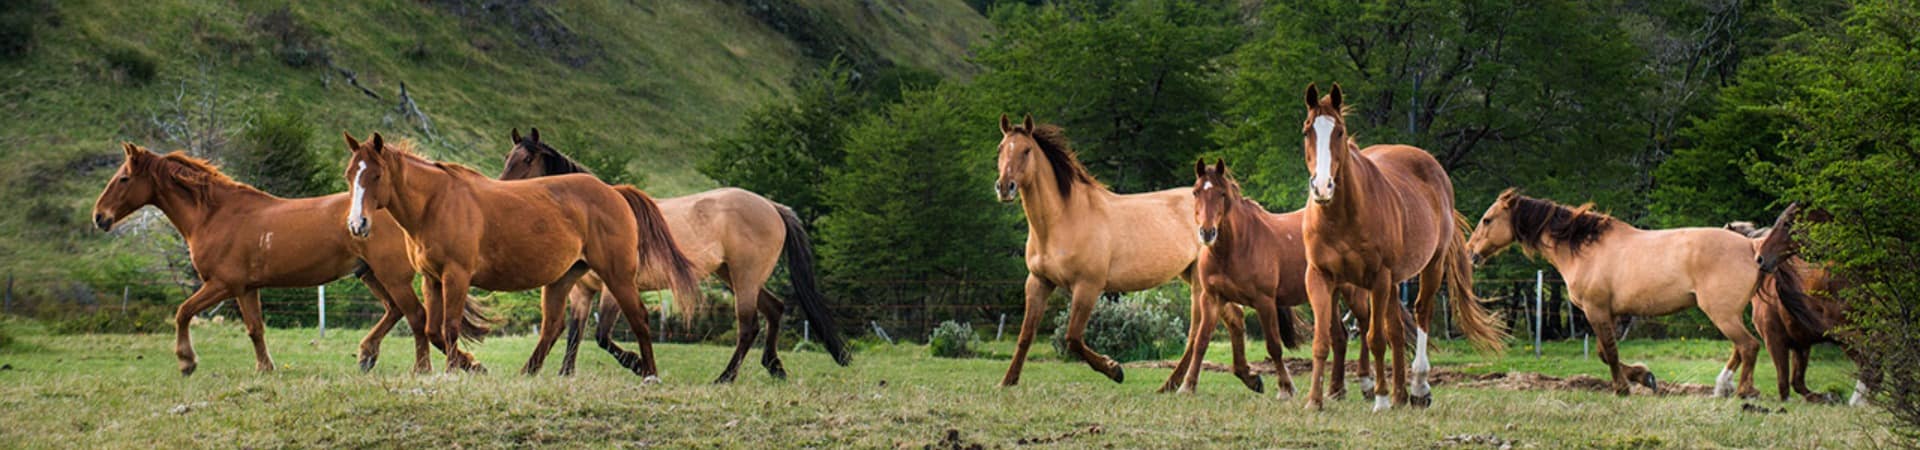 Explora patagonia cavalos